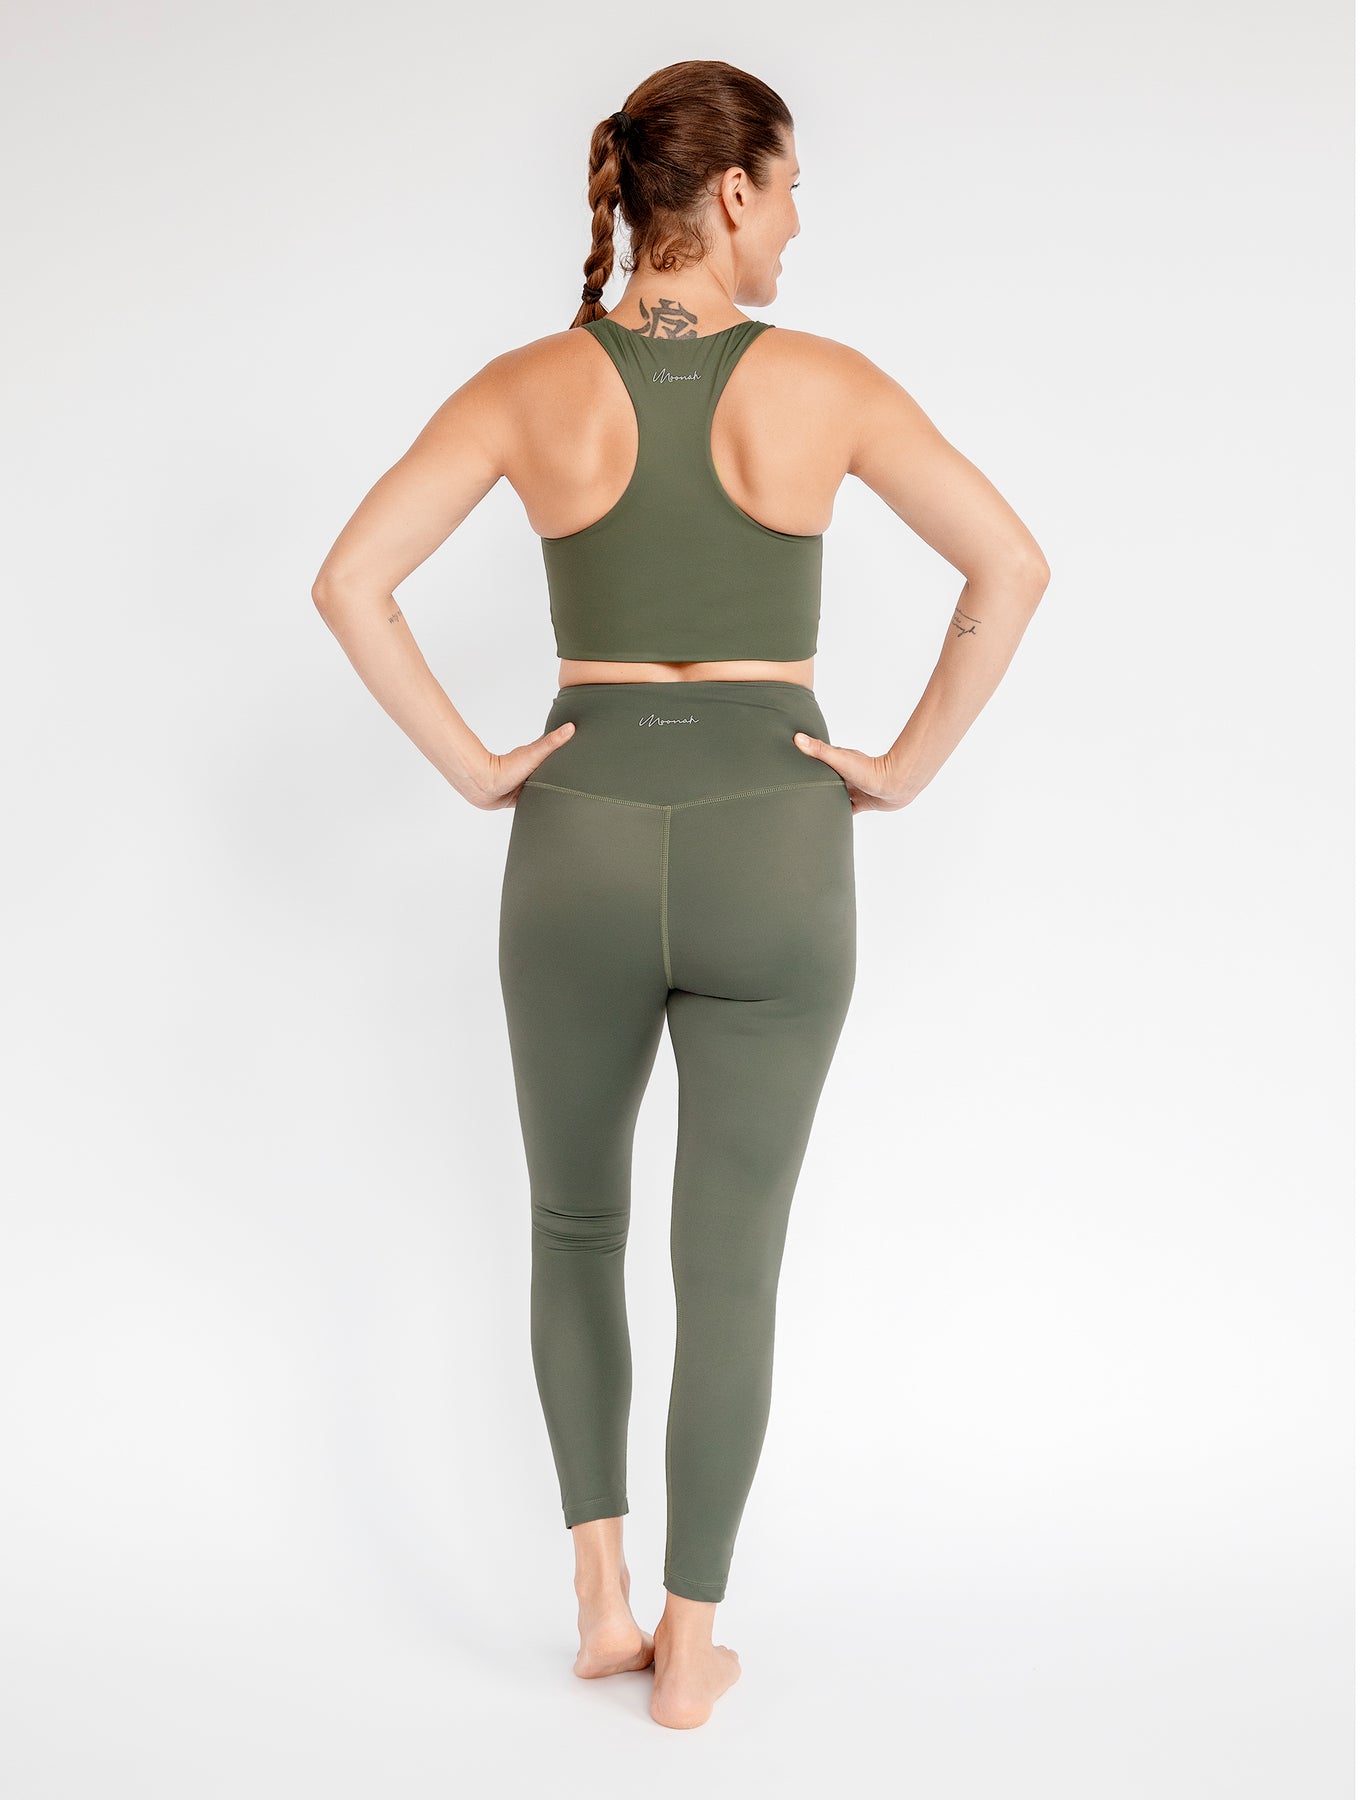 Green olive Leggings for Women, Yoga Pants, 5 High Waist Leggings